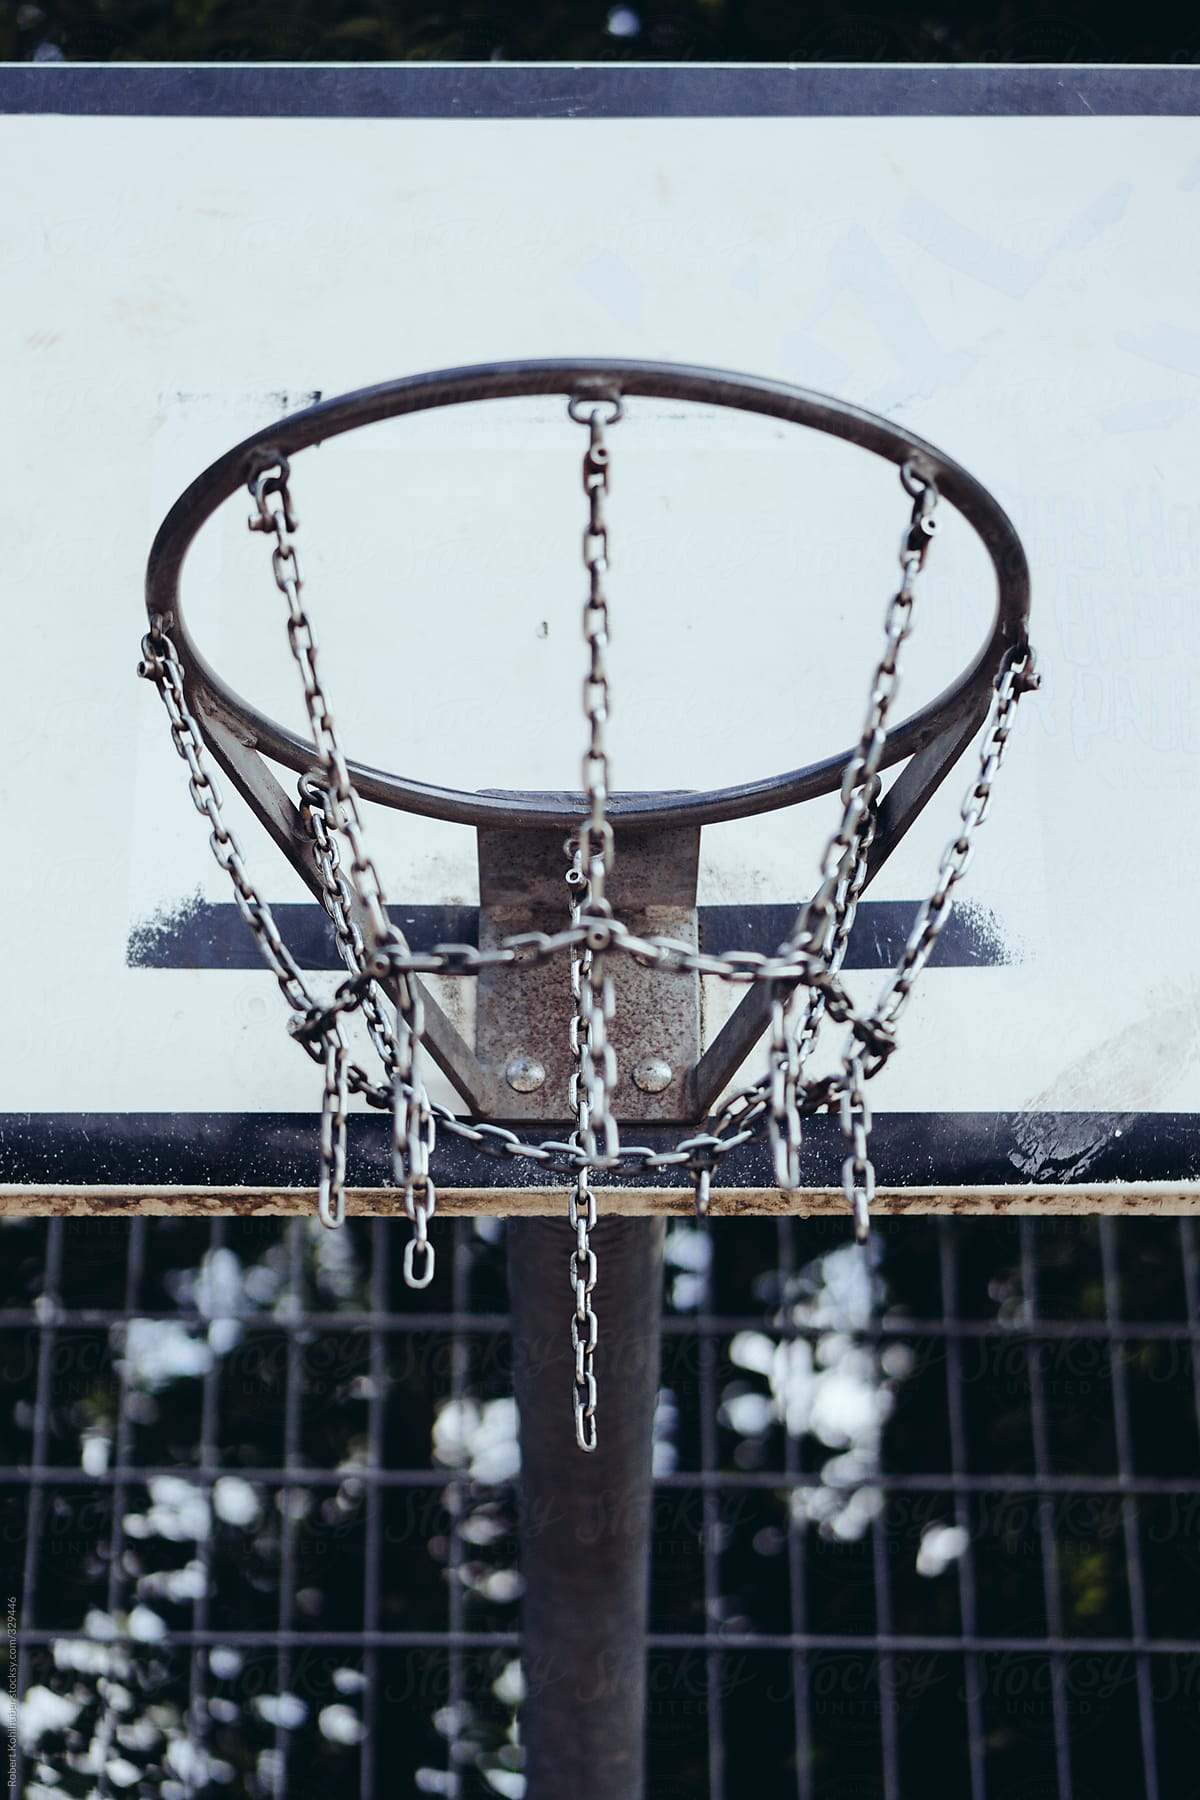 Metal basketball hoop in park